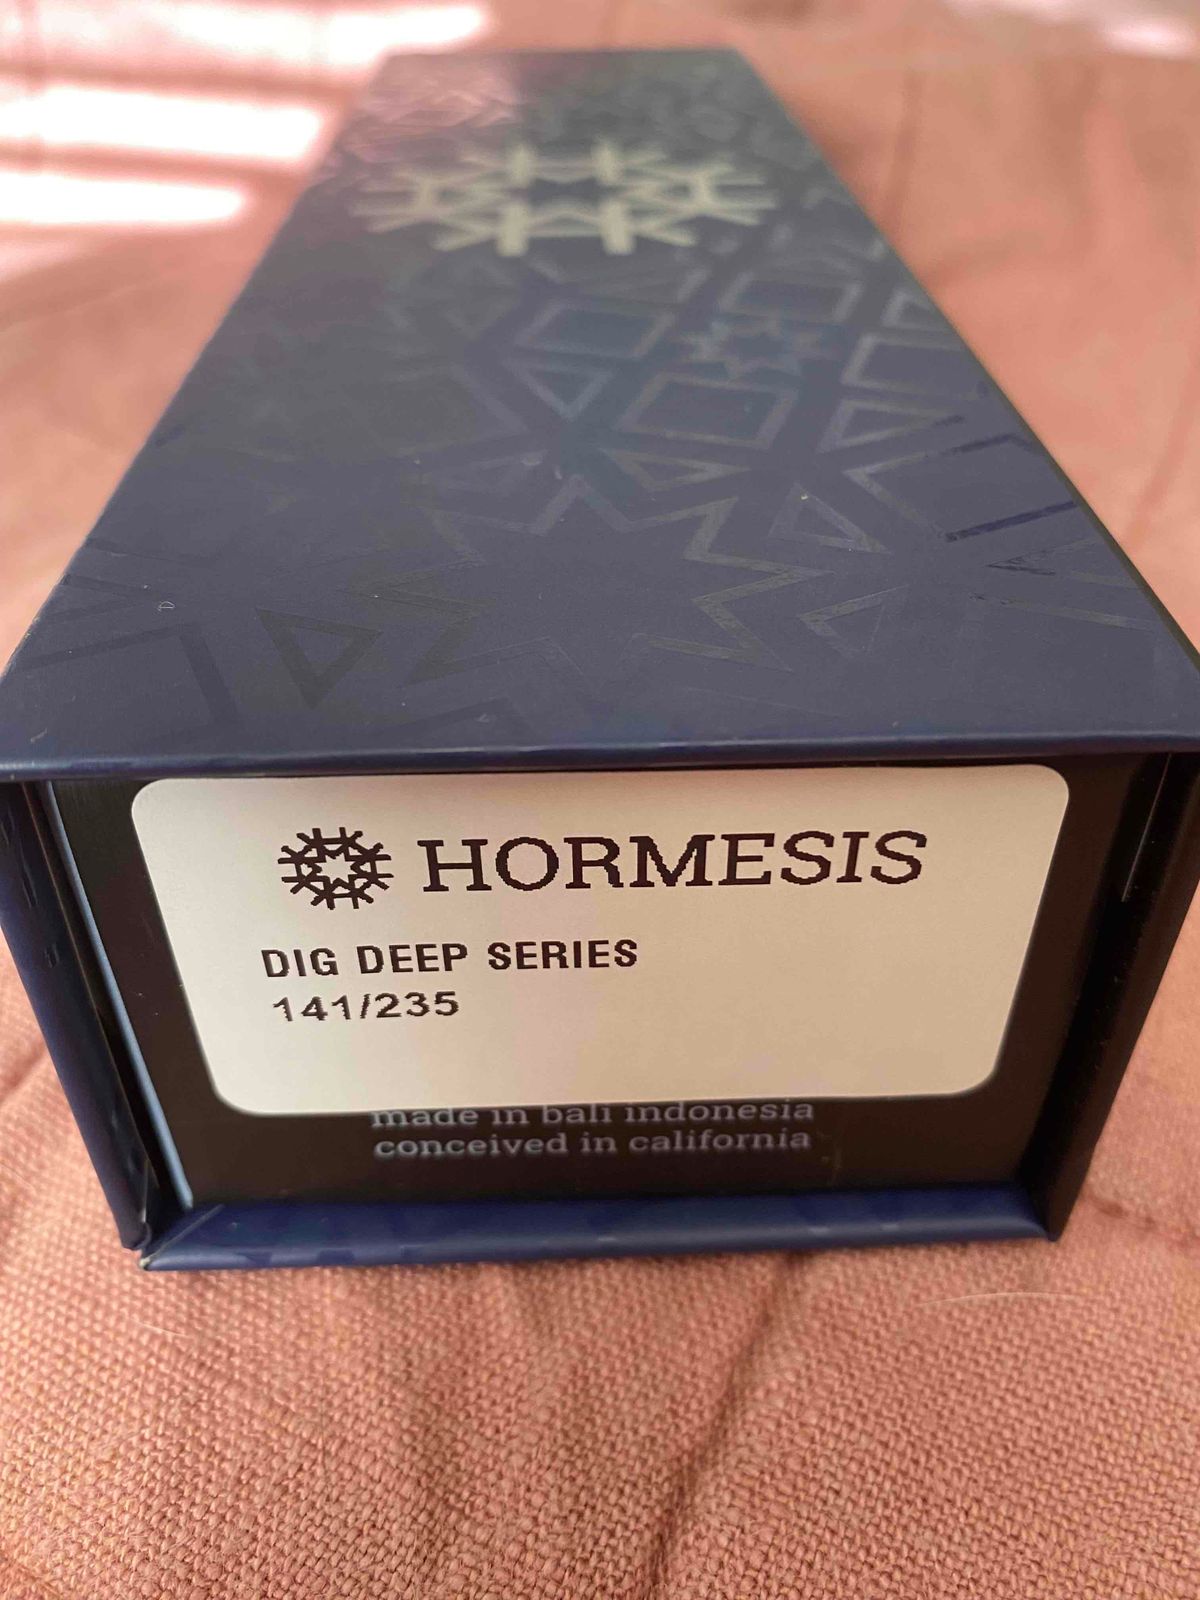 NIB Hormesis Dig Deep Series